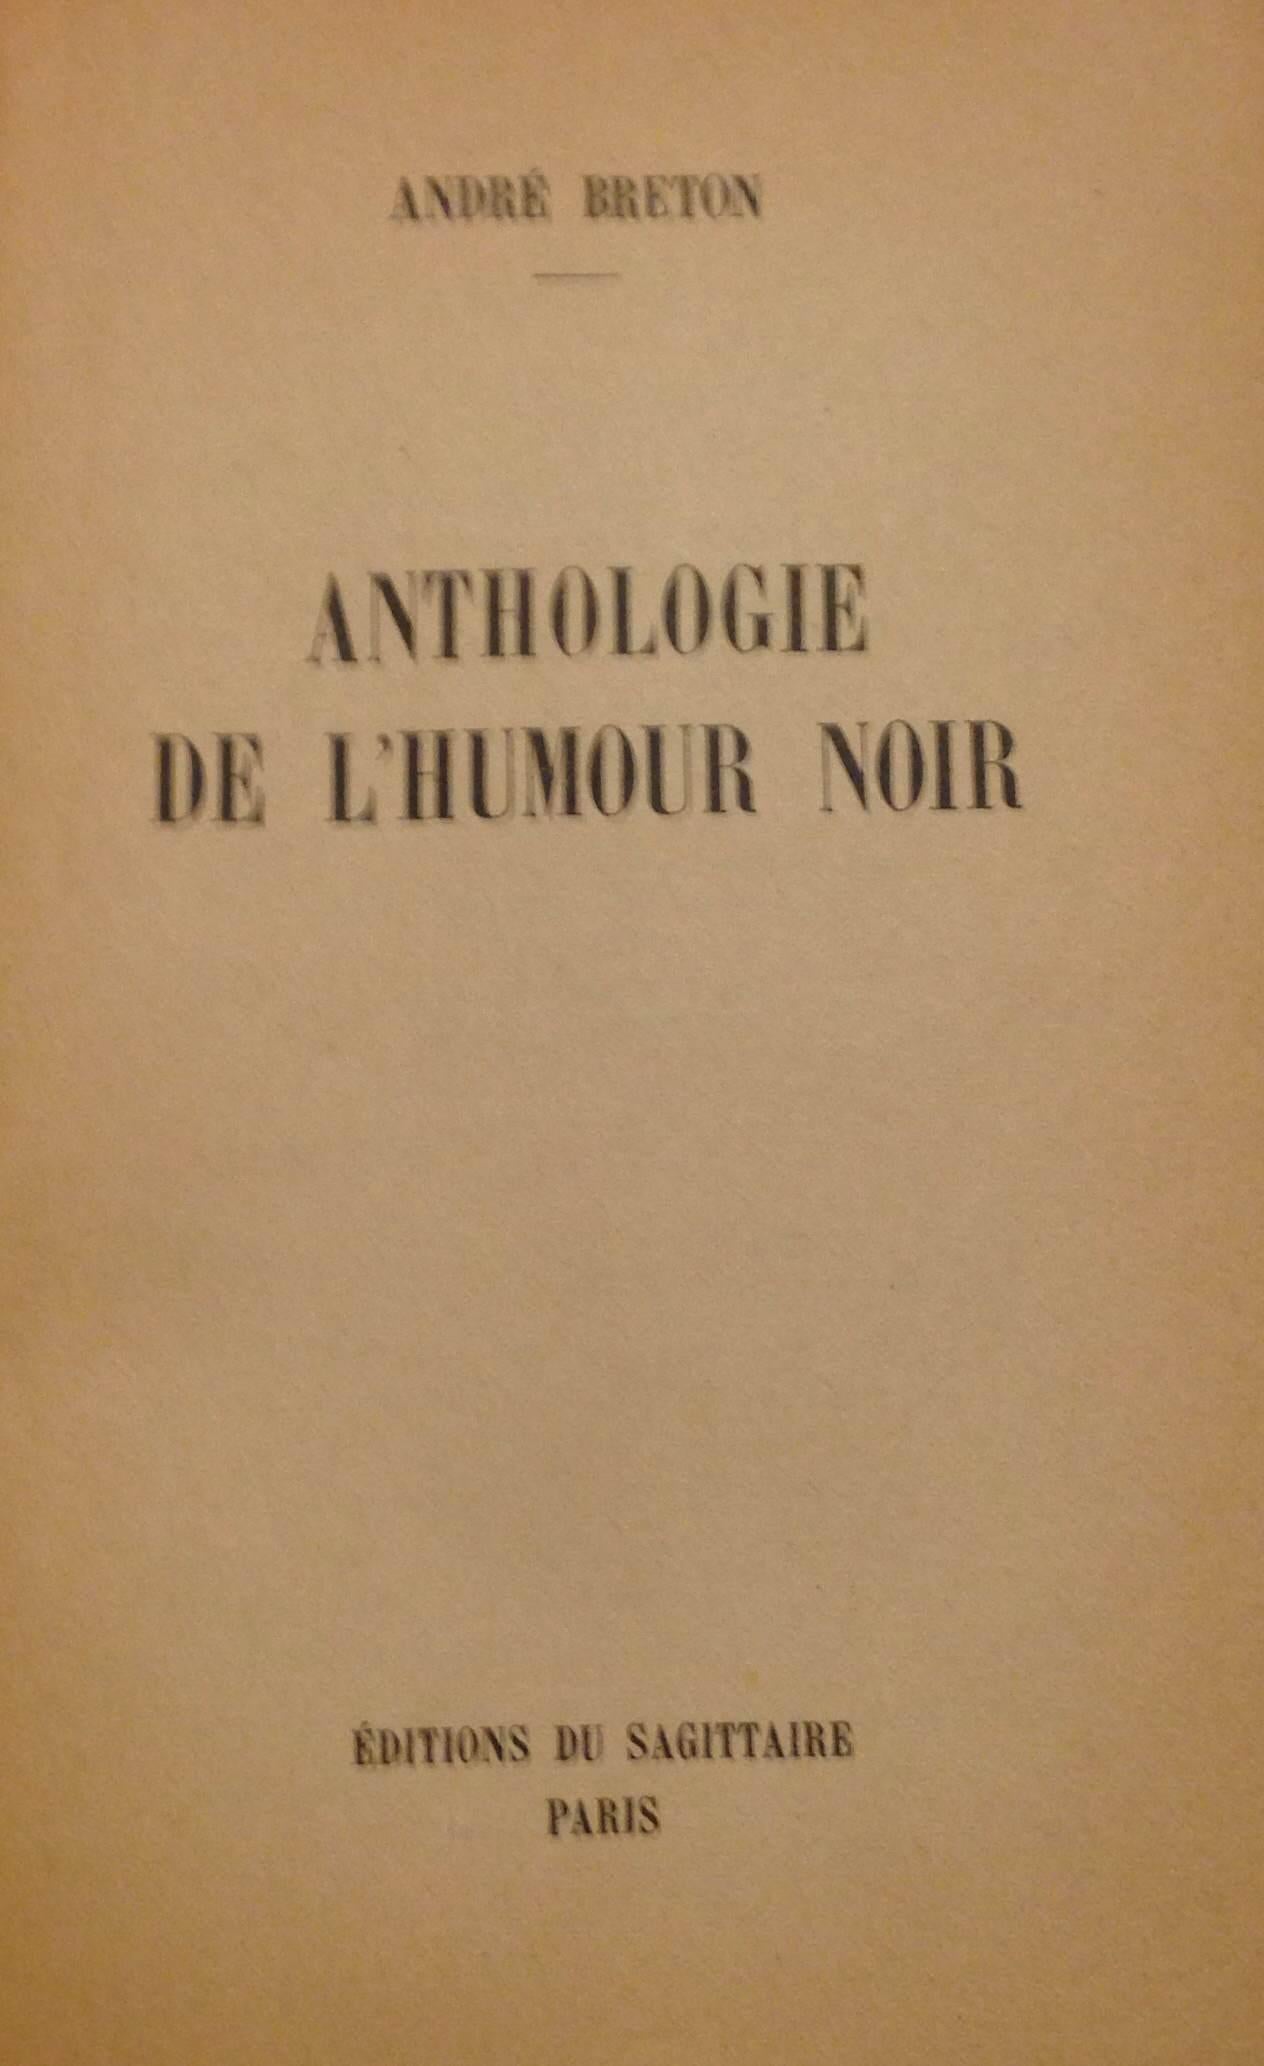 Anthologie de l'Humour Noir - Rare Book illustrated by André Breton - 1950 For Sale 1